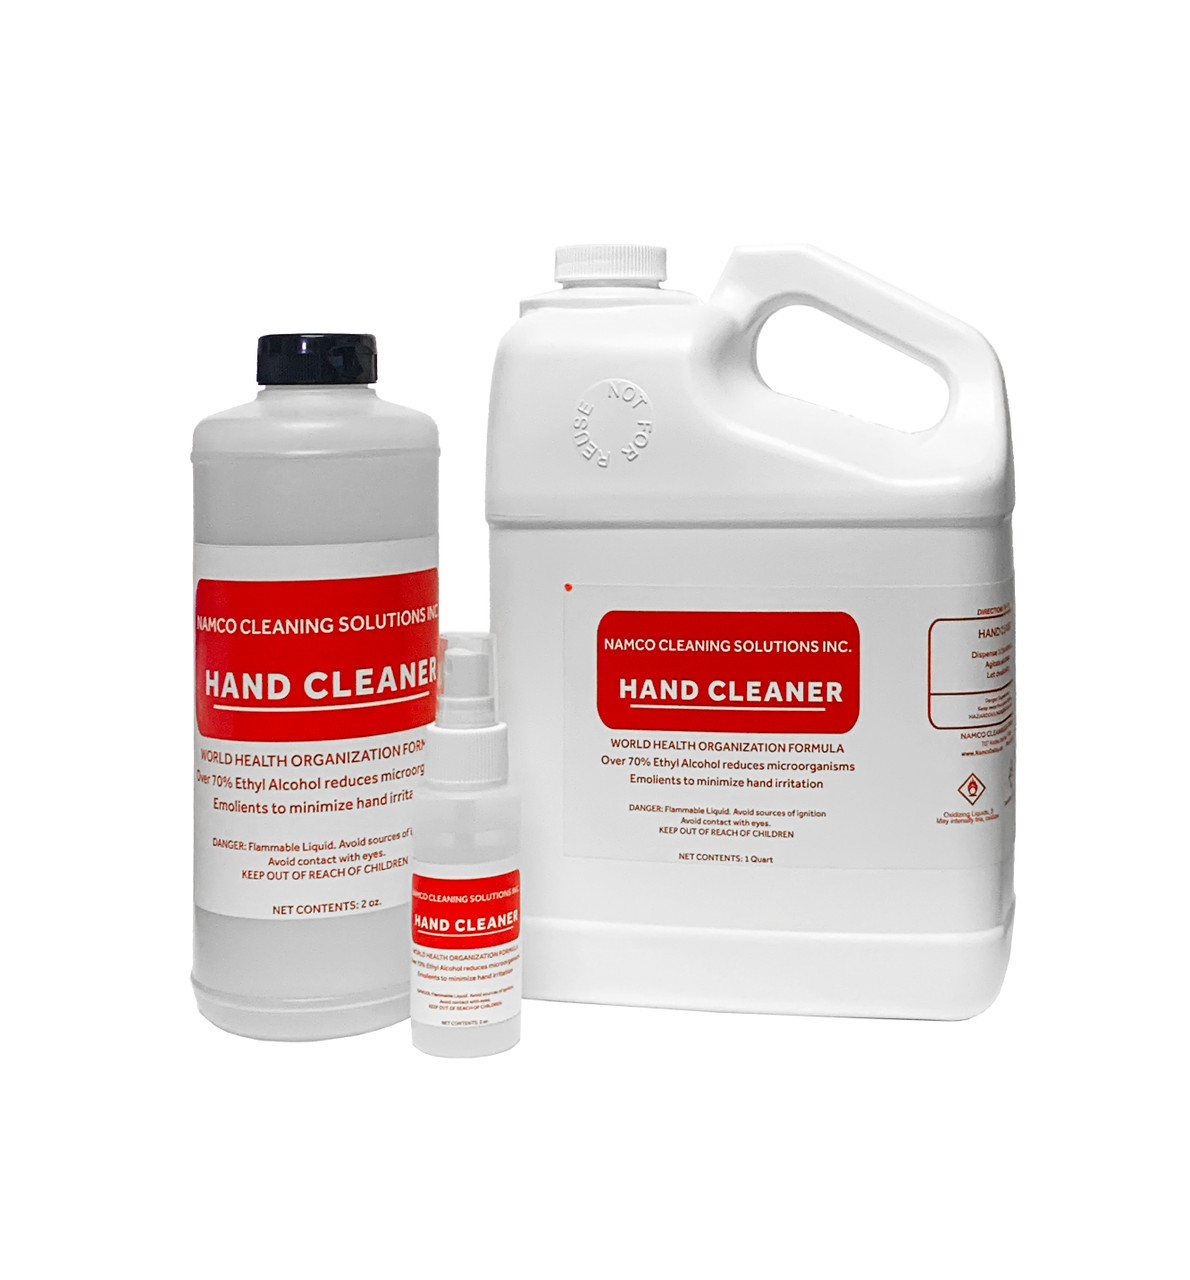 32 Oz. Chemical Resistant Spray Bottle - Namco Dallas